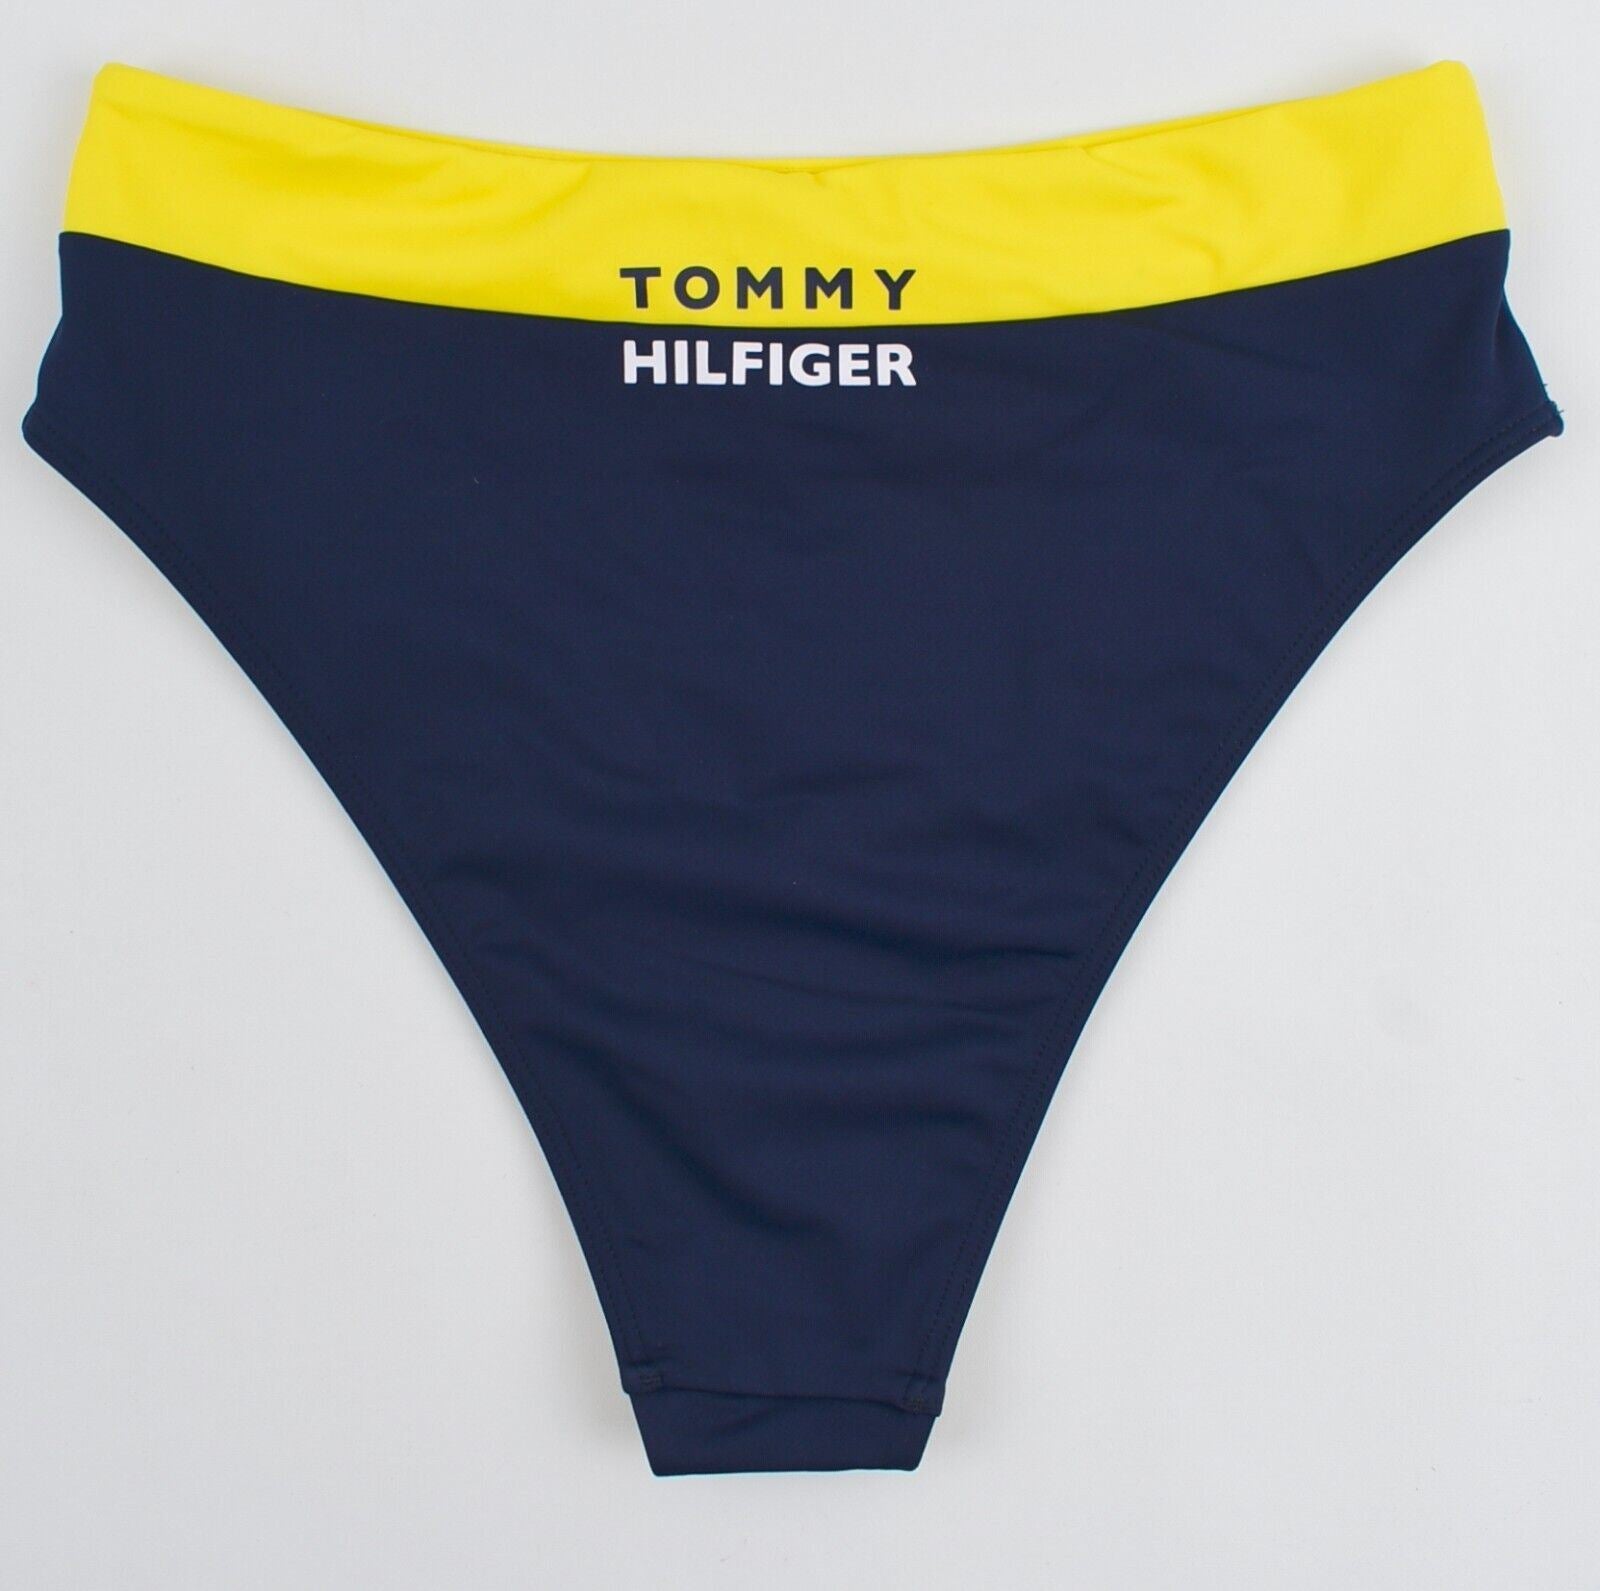 TOMMY HILFIGER Swimwear: Women's Cheeky Bikini Bottoms, Blue/Bold Yellow, size S